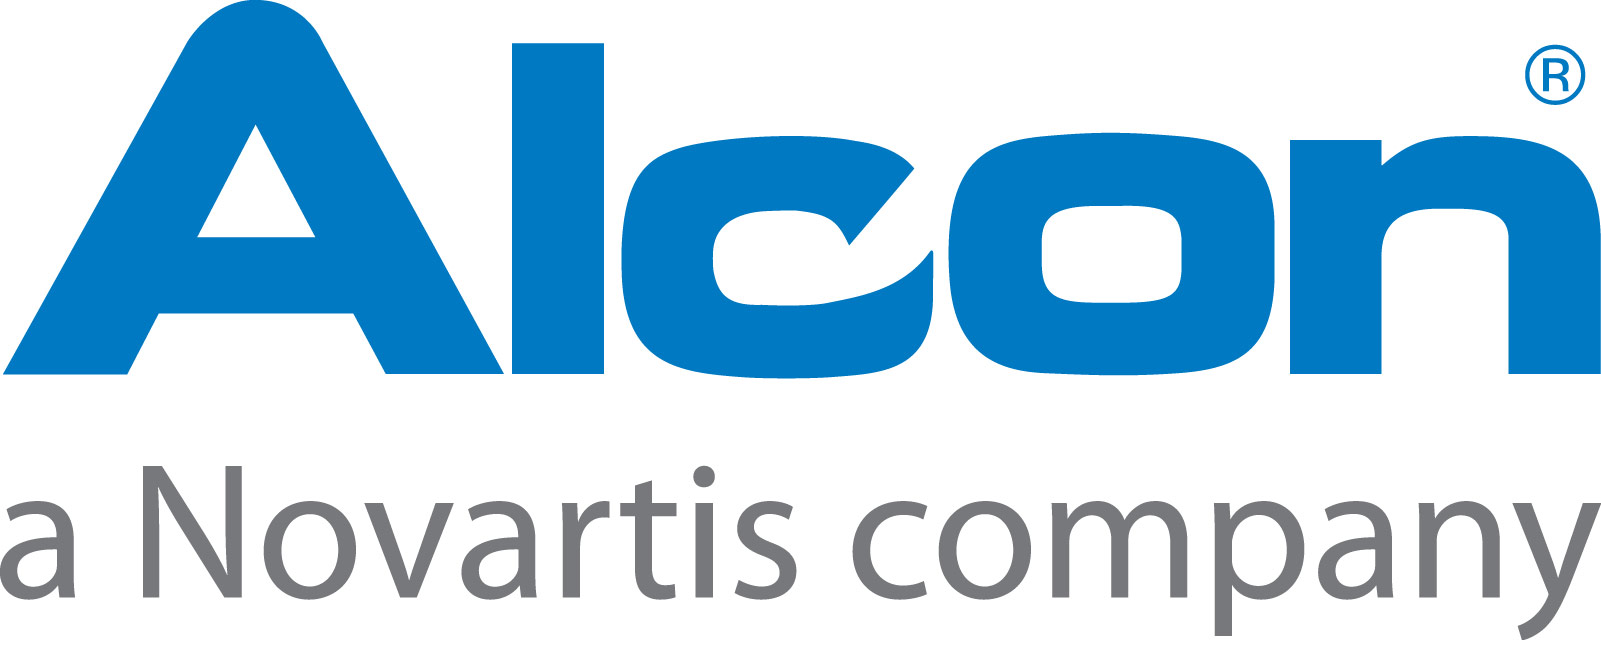 Alcon Novartis-Lockup-2012